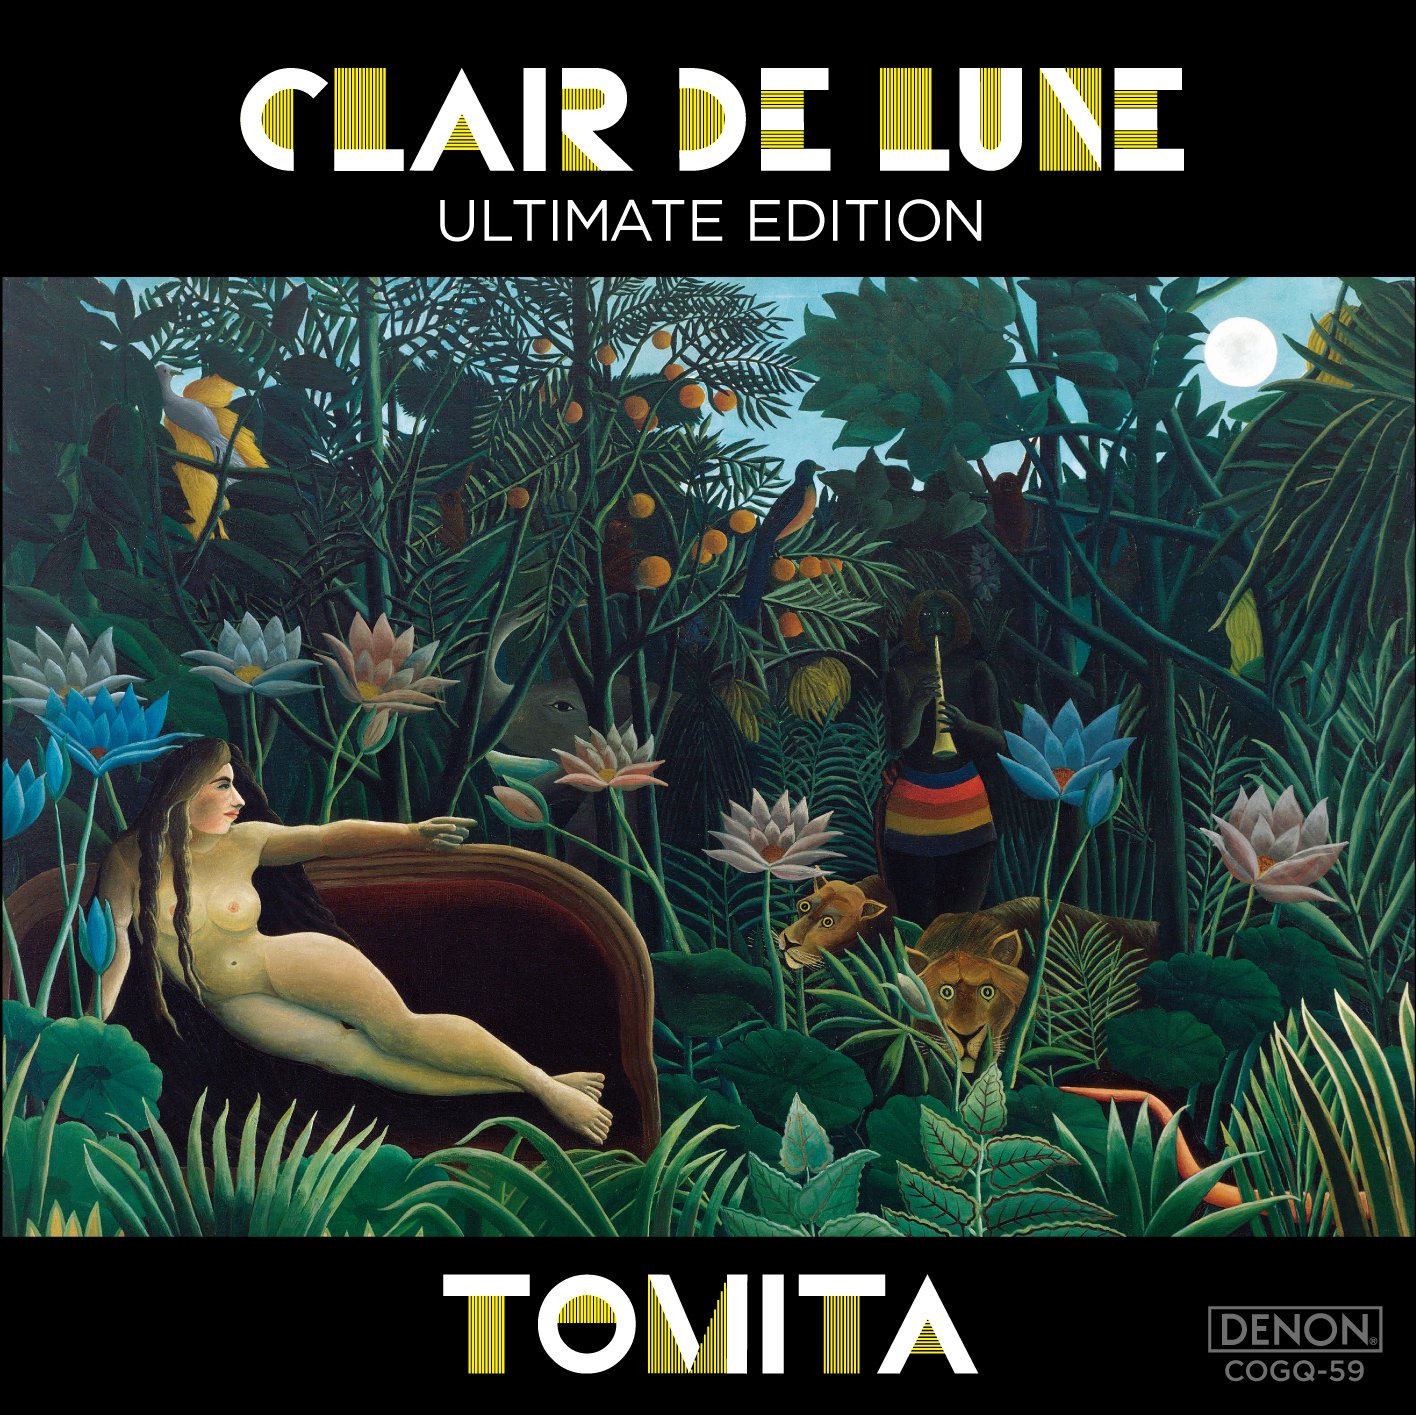 Audio Cd Isao Tomita - Clair De Lune (Ultimate Edition) NUOVO SIGILLATO, EDIZIONE DEL 20/06/2012 SUBITO DISPONIBILE